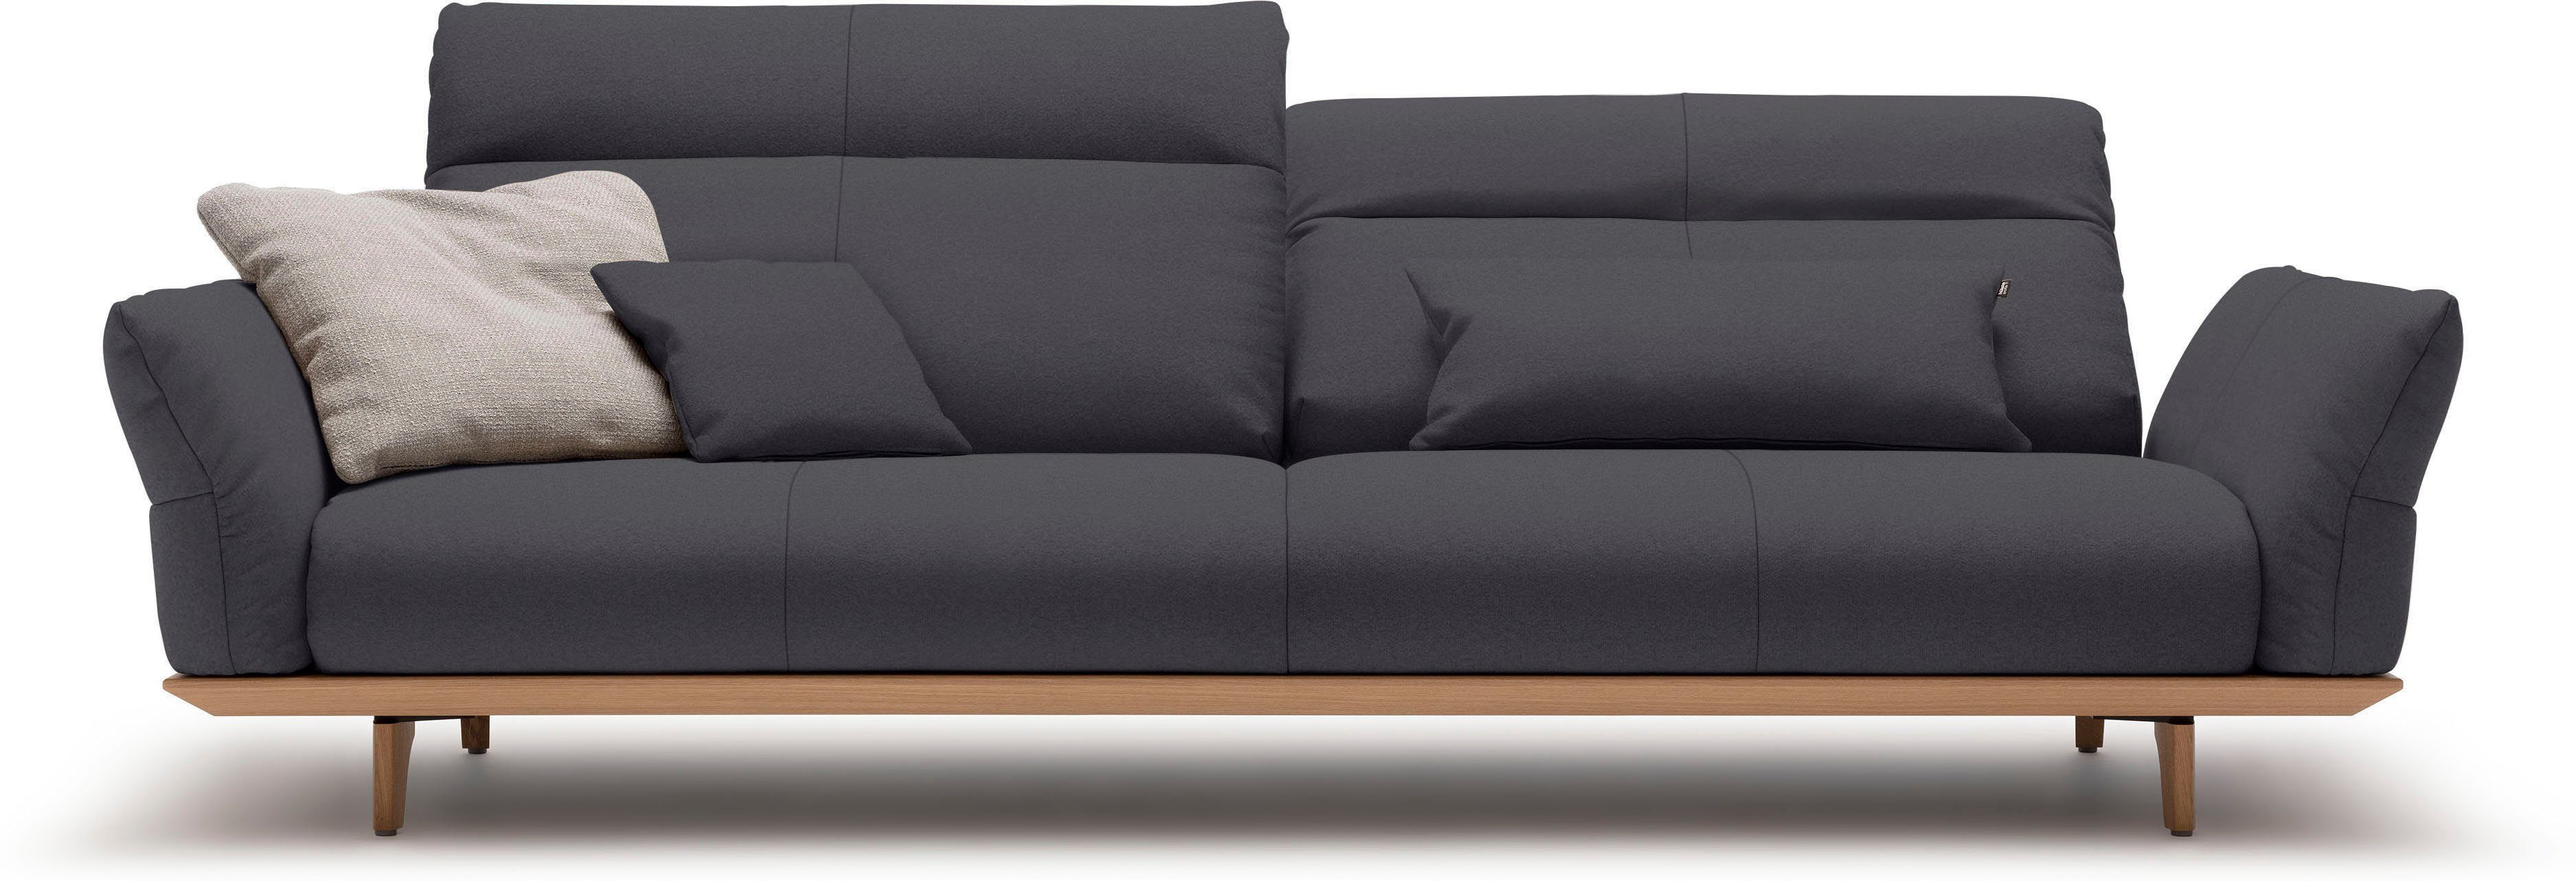 hülsta sofa 4-Sitzer hs.460, Sockel in Eiche, Füße Eiche natur, Breite 248 cm